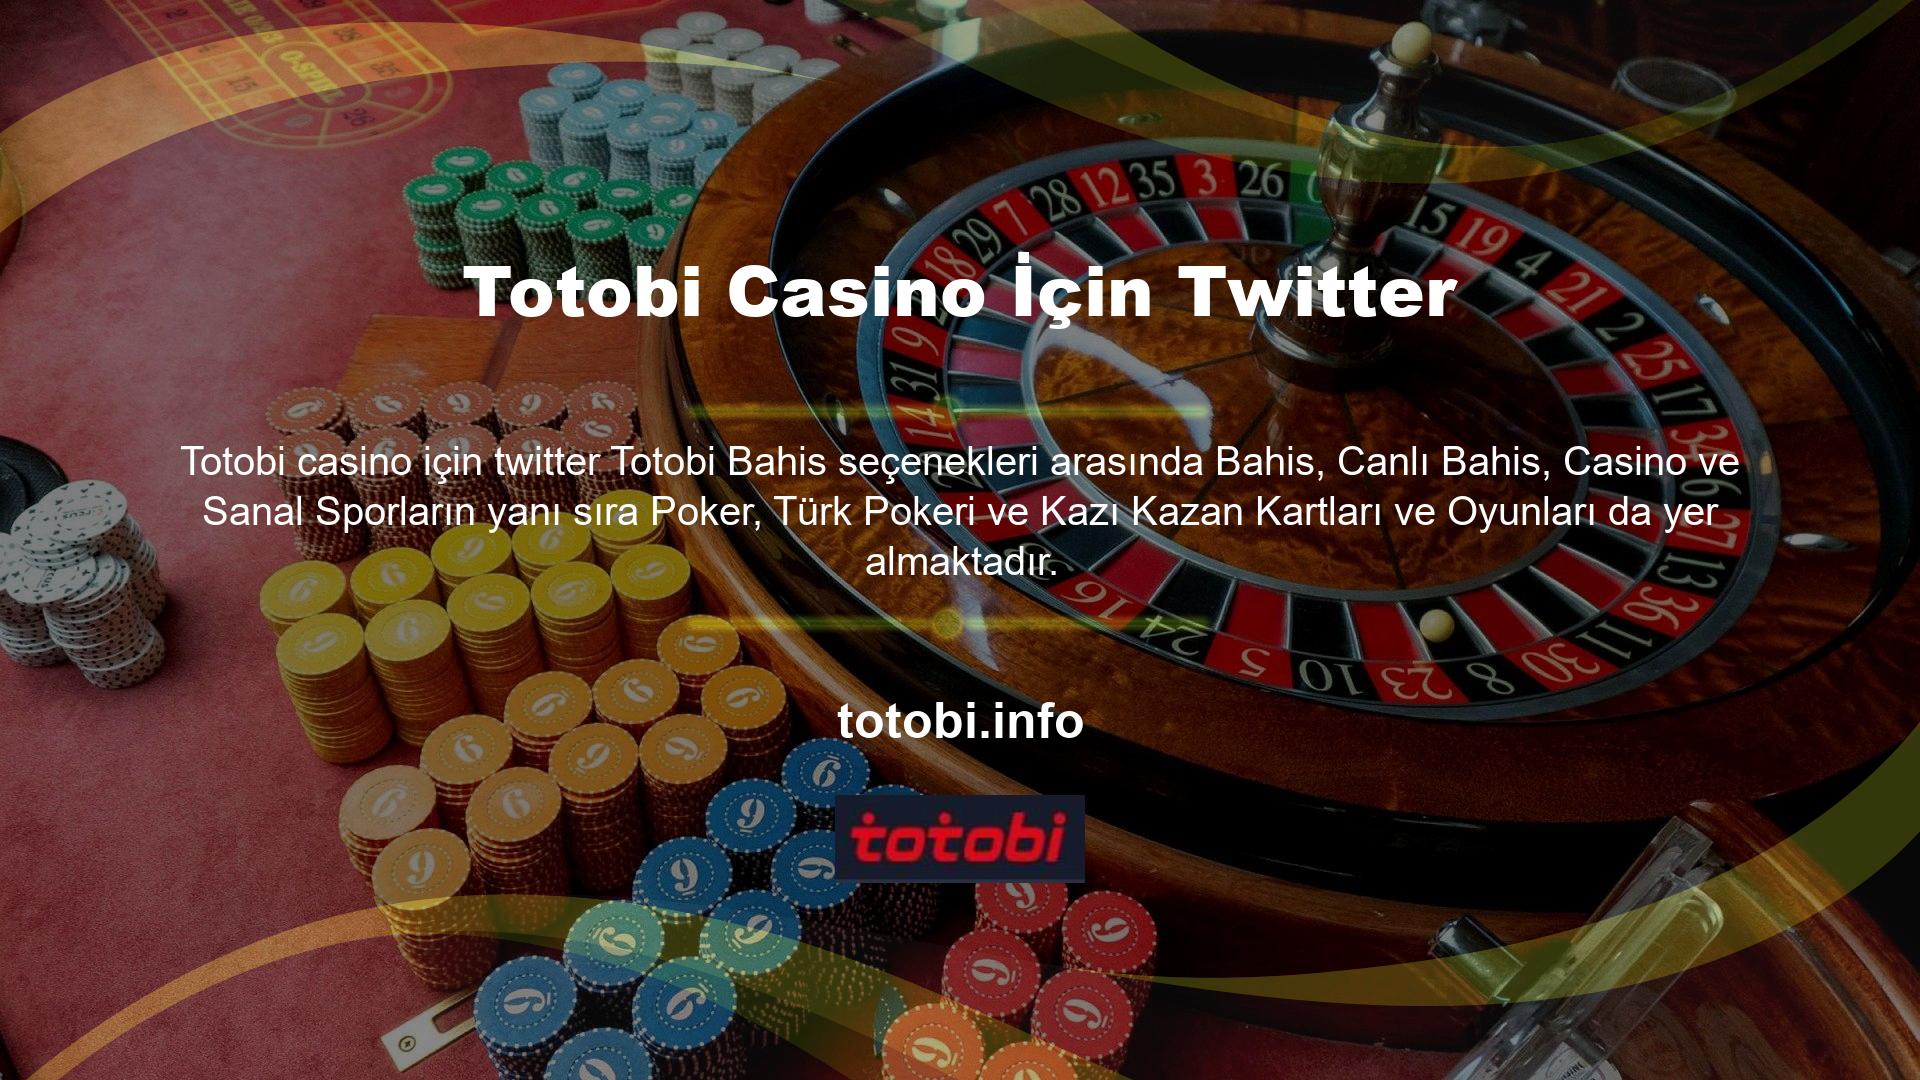 Twitter'a giriş yapmak için kullandığınız kullanıcı adı halihazırda Totobi casino Twitter olarak kayıtlıdır